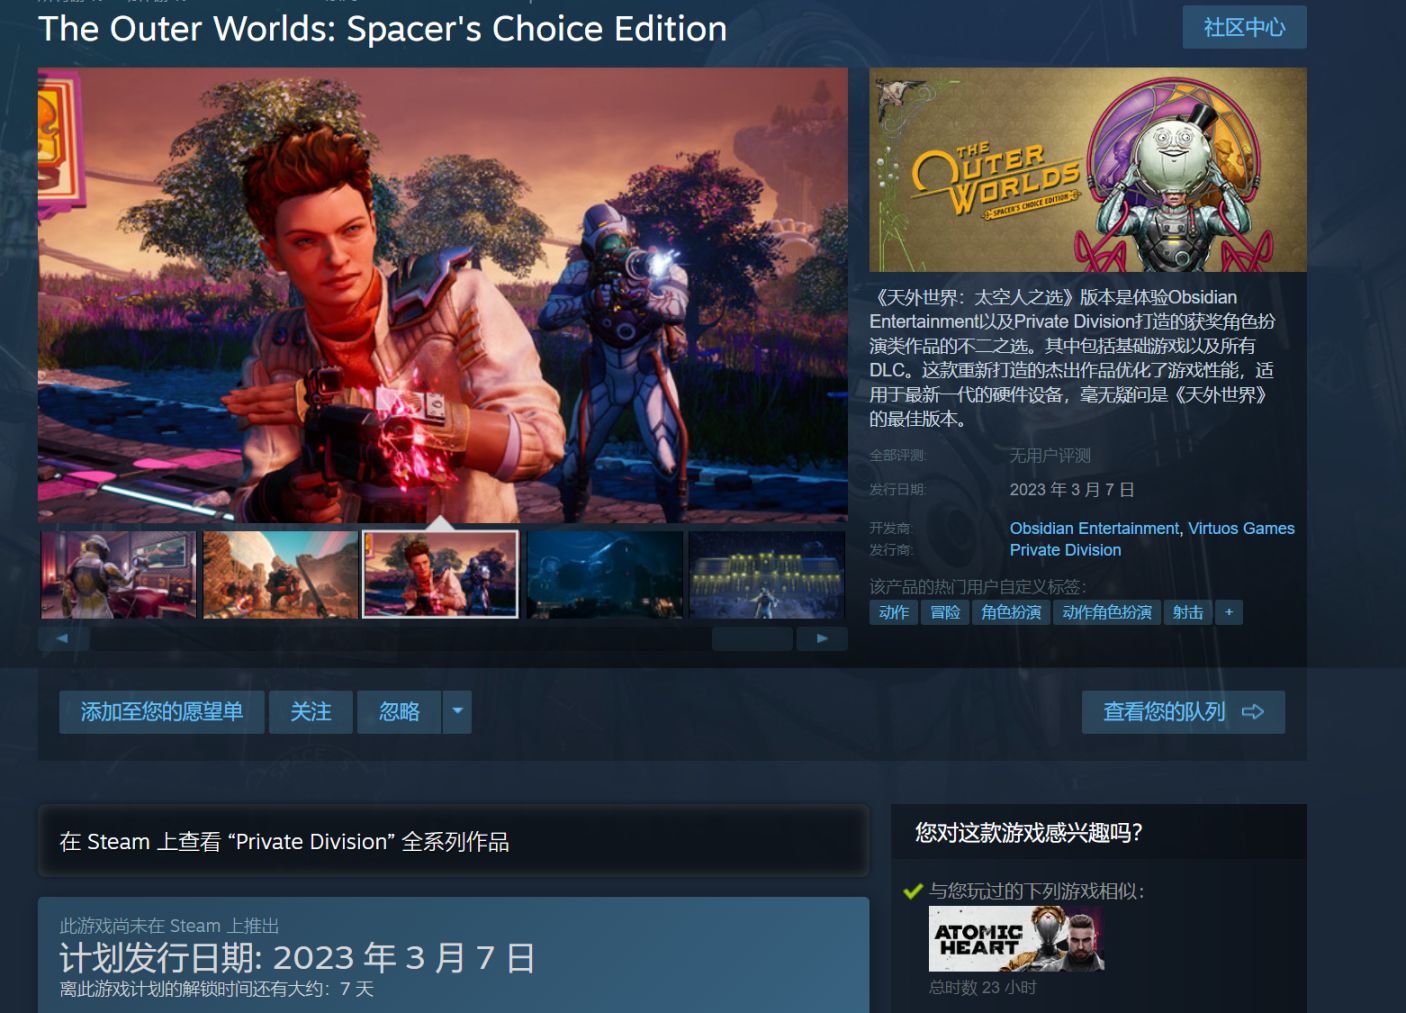 《天外世界:太空人之選》Steam頁面上線 將於2023年3月7日發售-第0張